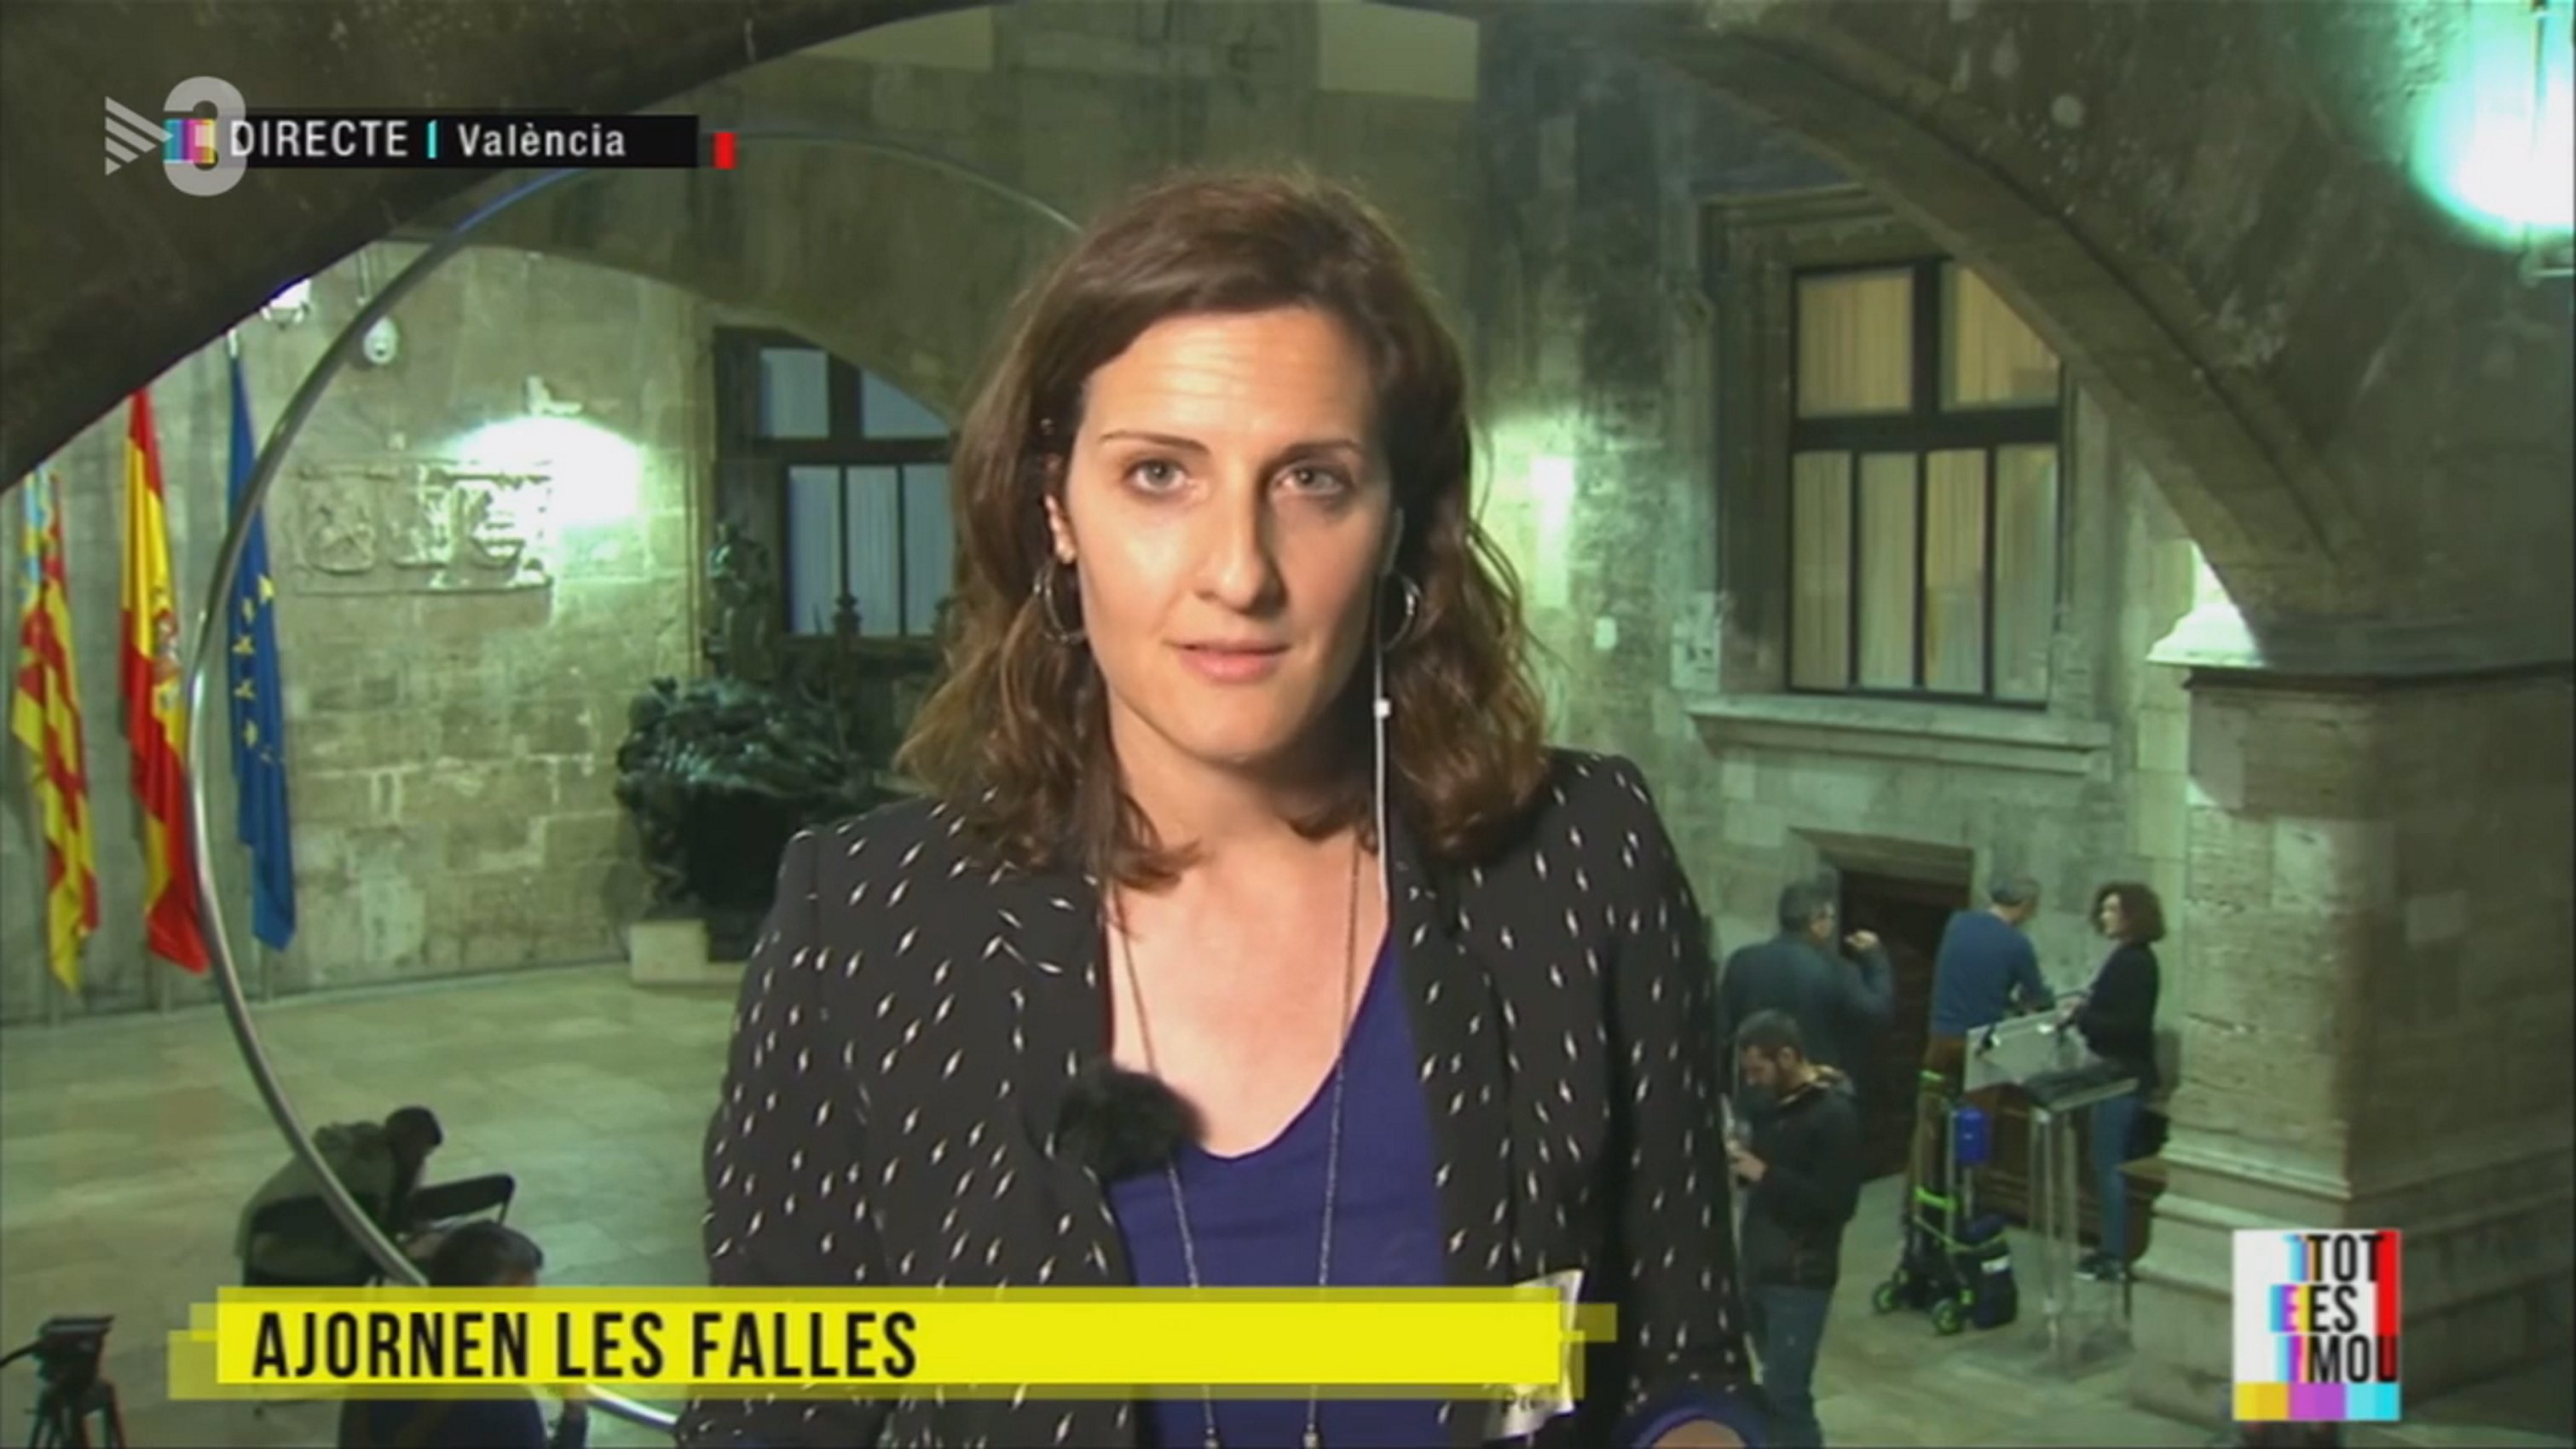 Valiente gesto de la corresponsal de TV3 en Valencia en defensa del catalán